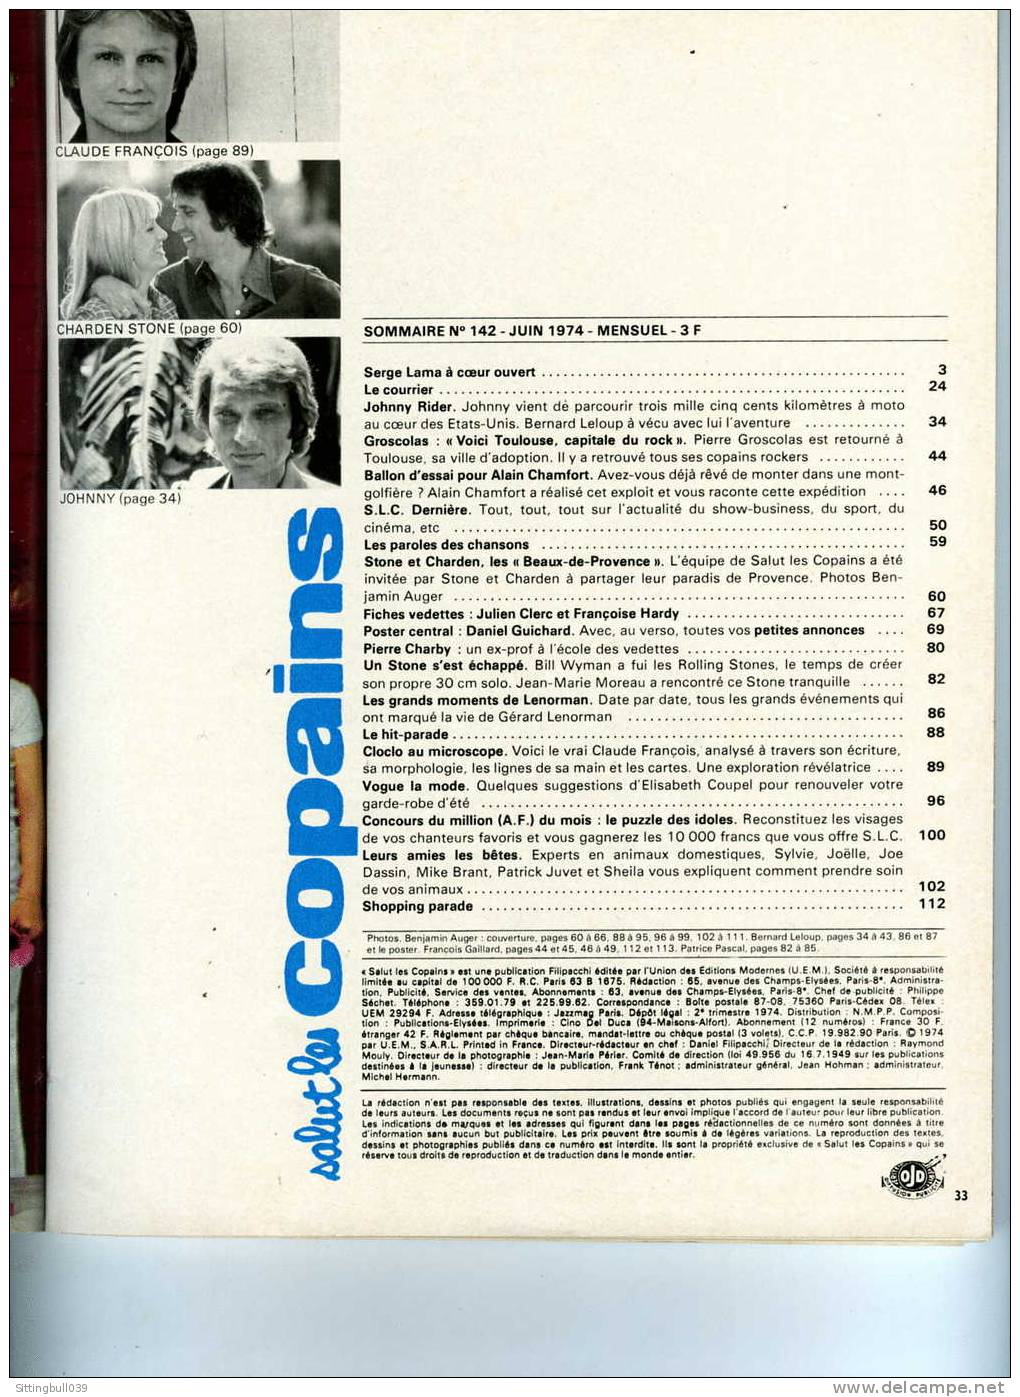 SALUT LES COPAINS N° 142 (SLC) JUIN 1974. CLOCLO, JOHNNY, ALAIN CHAMFORT STONE Et CHARDEN, Etc. SUPERBES PHOTOS. - Music